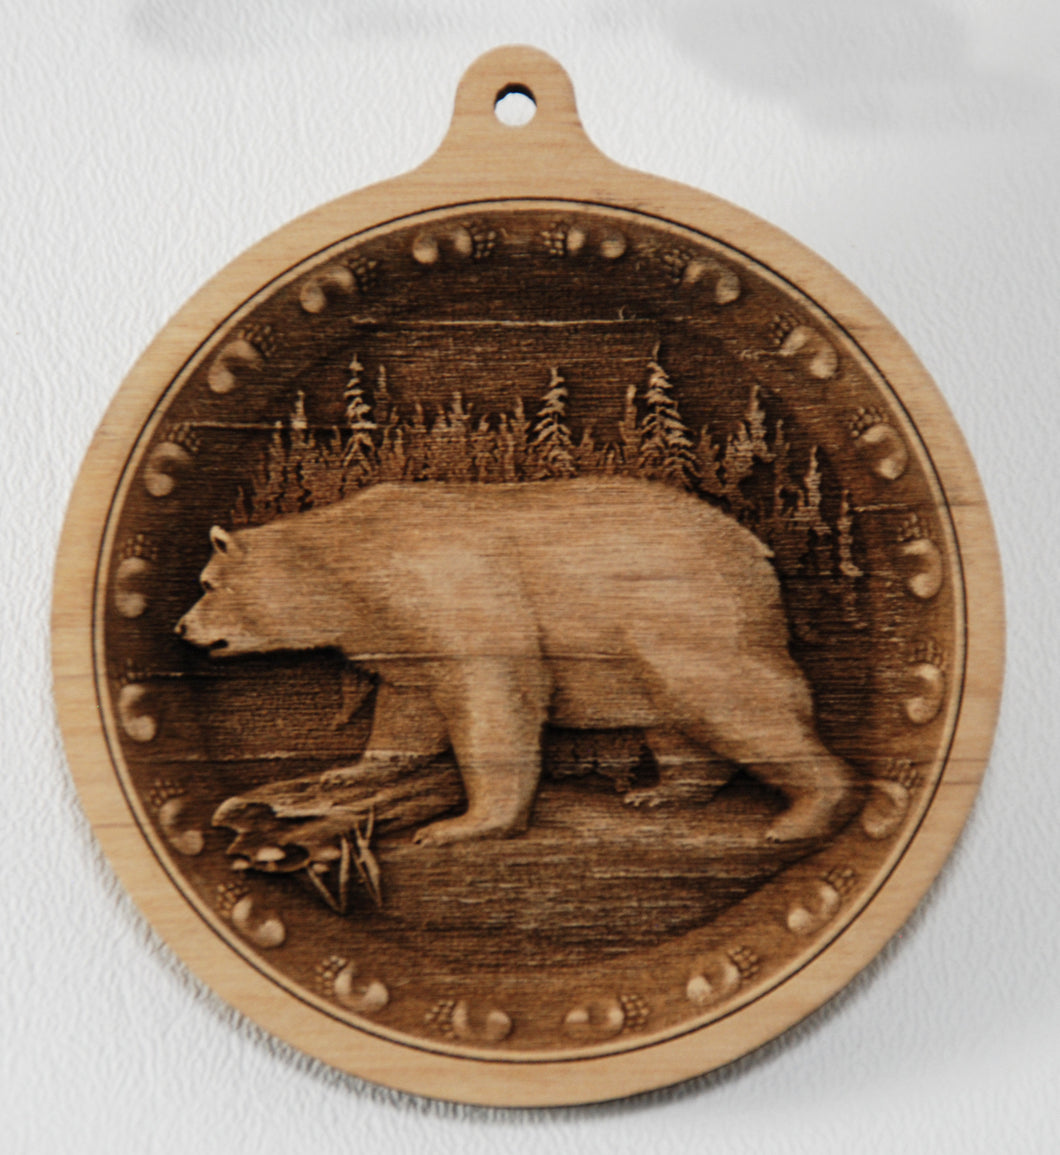 Bear Ornament 3D wood ornament wooden bear ornament